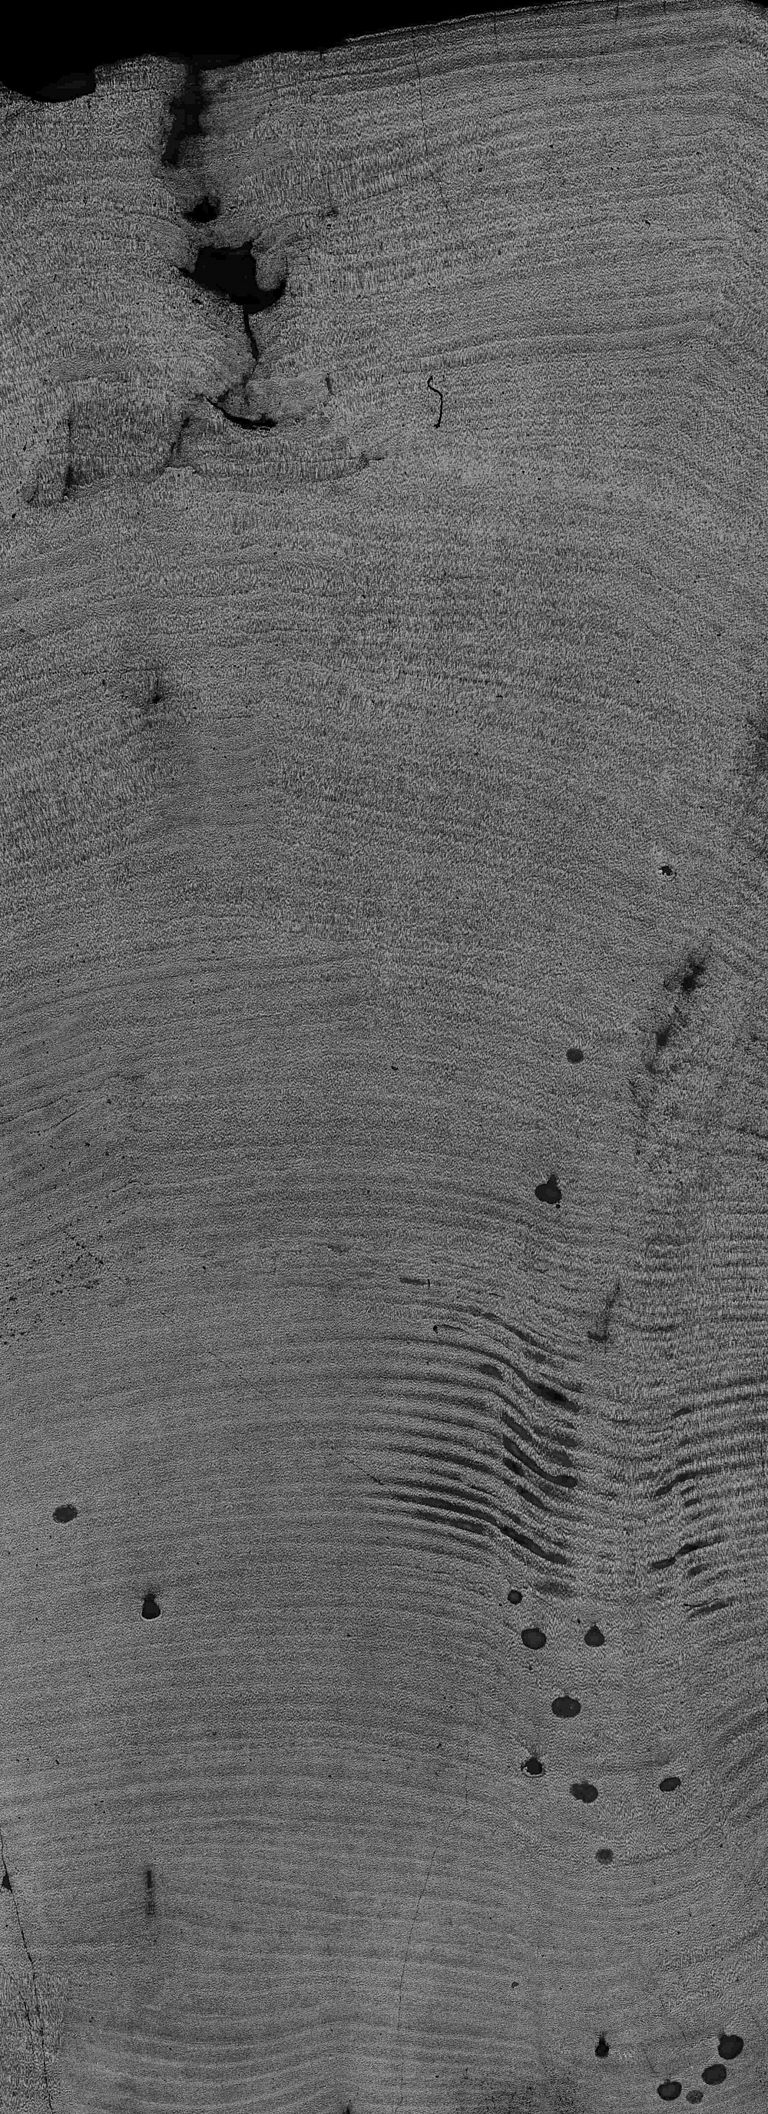 Ein Schnitt durch die Rotalge Clathromorphum zeigt jährliche Wachstumsbänder, vergleichbar mit den Jahresringen von Bäumen. Das Bild zeigt ca. 150 Jahreslagen; der Maßstab von oben nach unten beträgt etwa 2,5 Zentimeter. Foto: Jochen Halfar